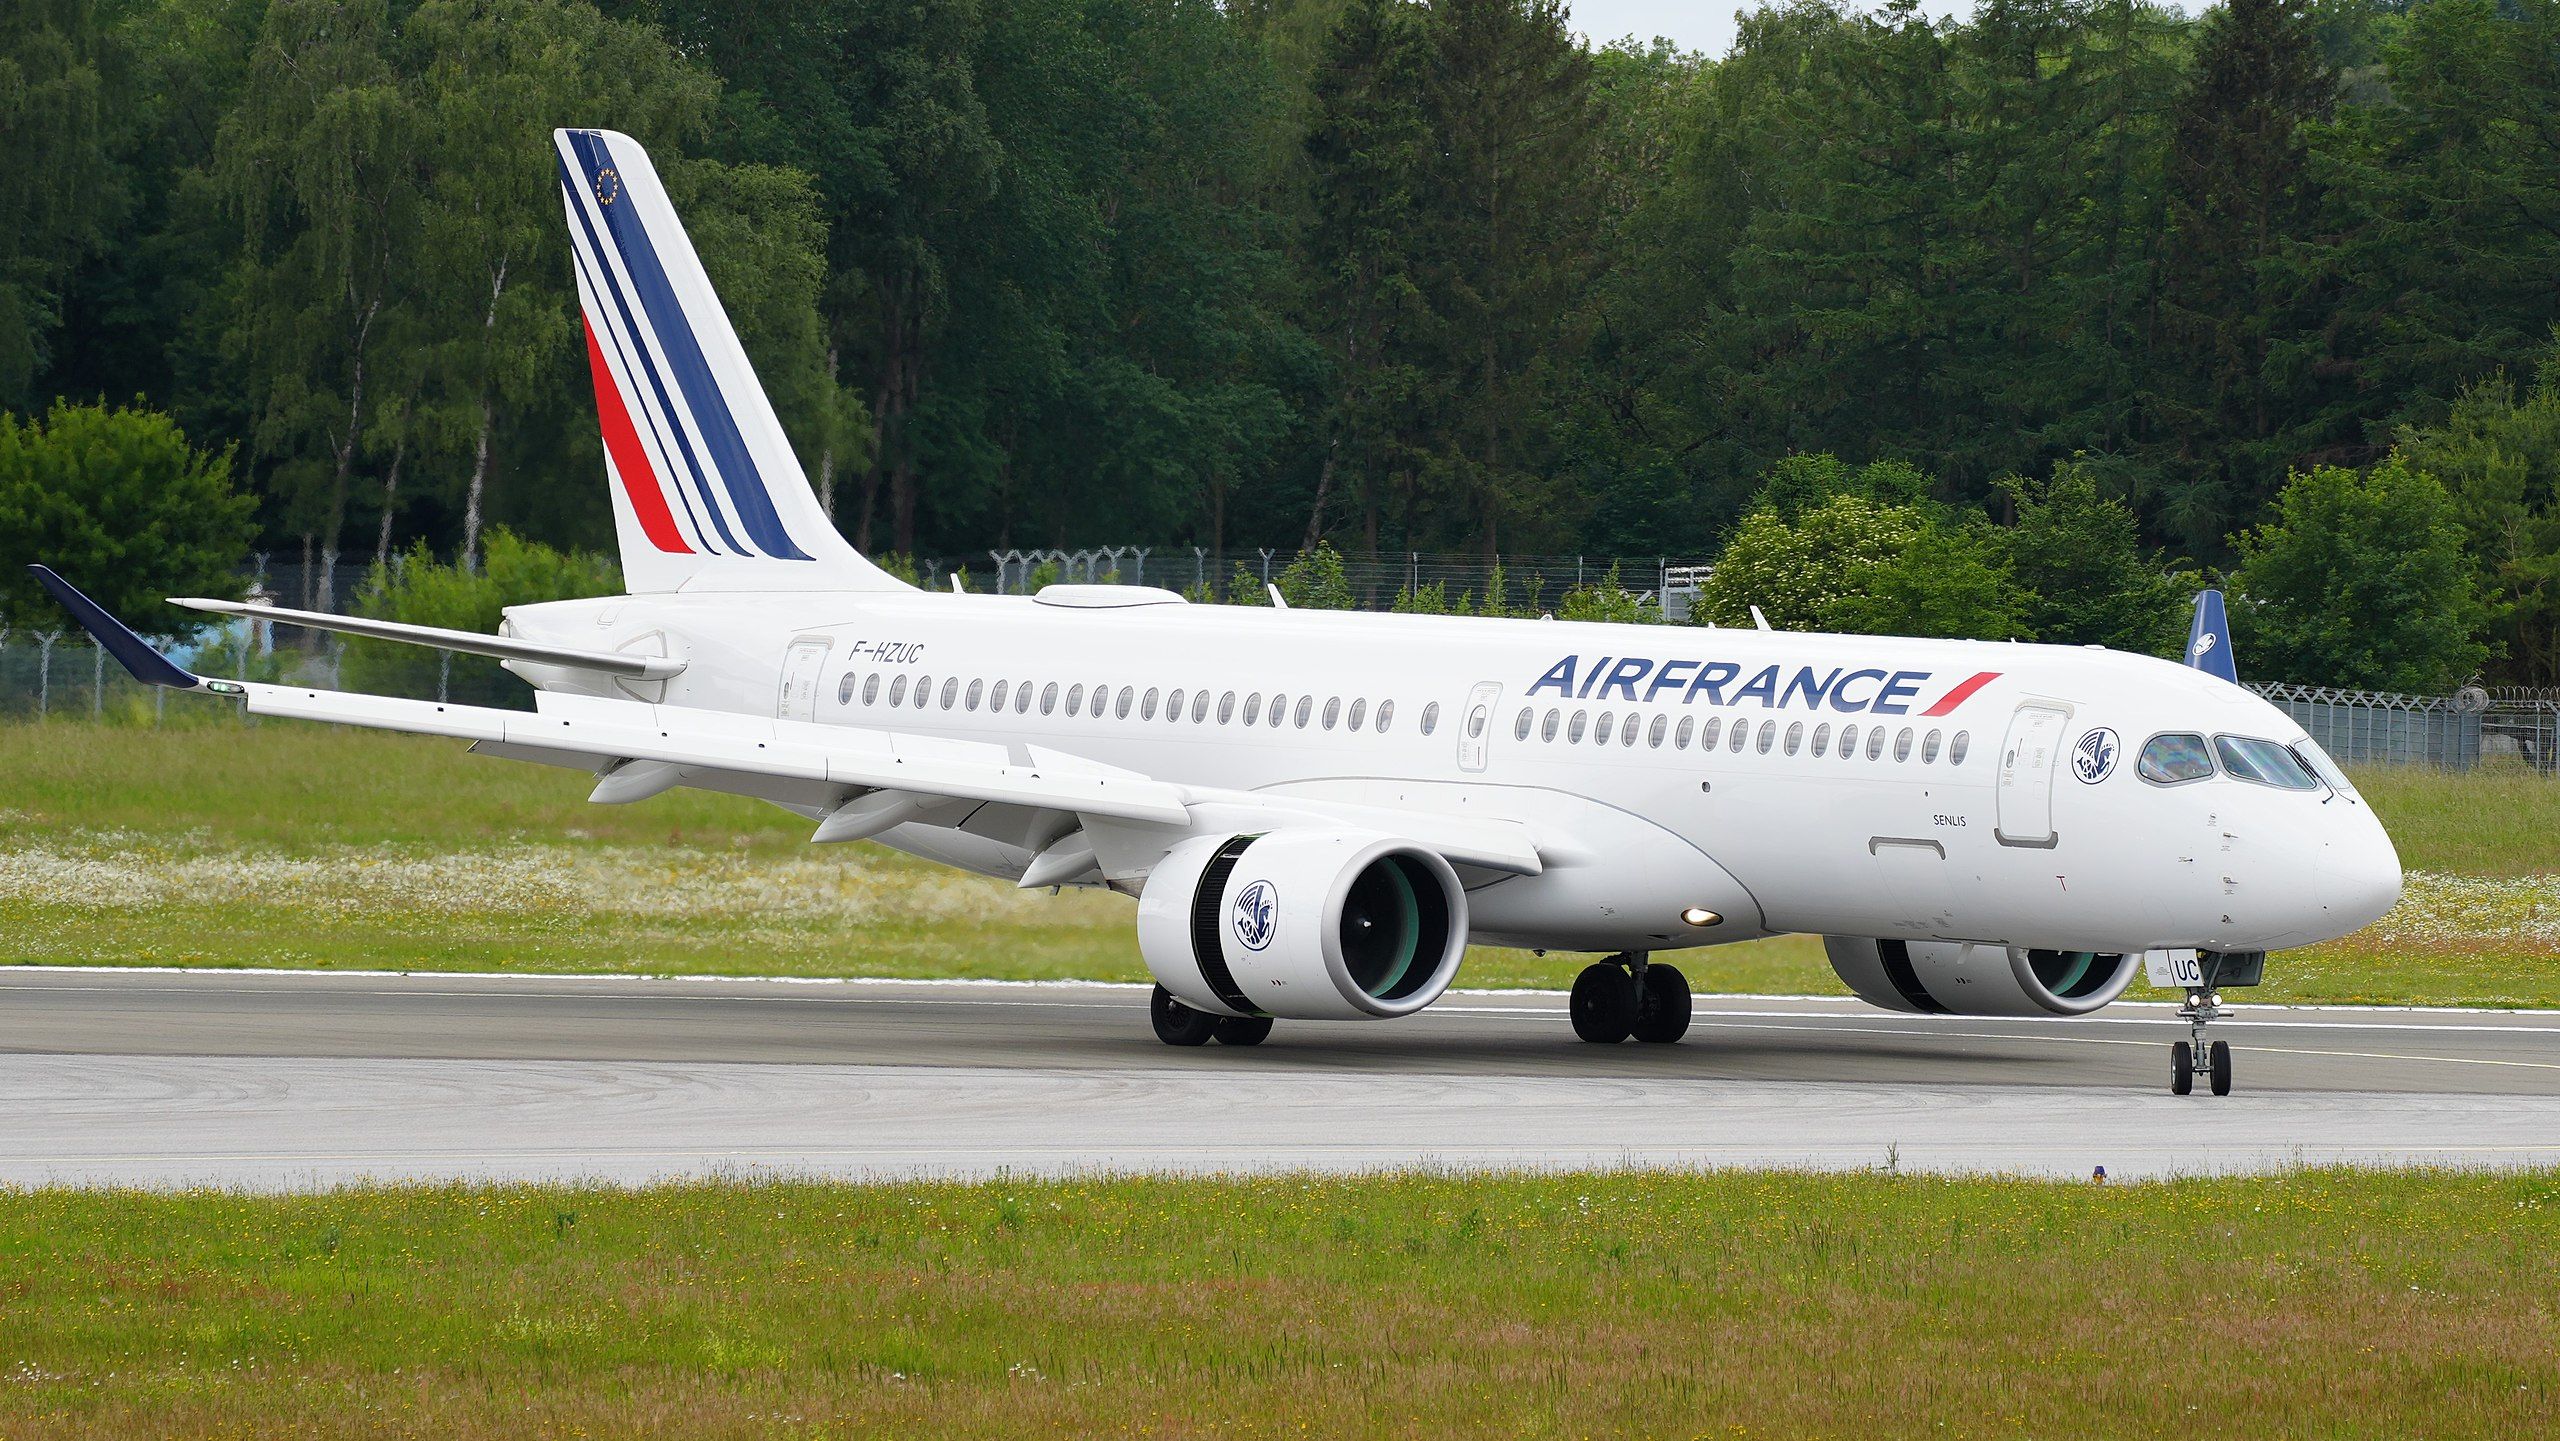 Air France a220